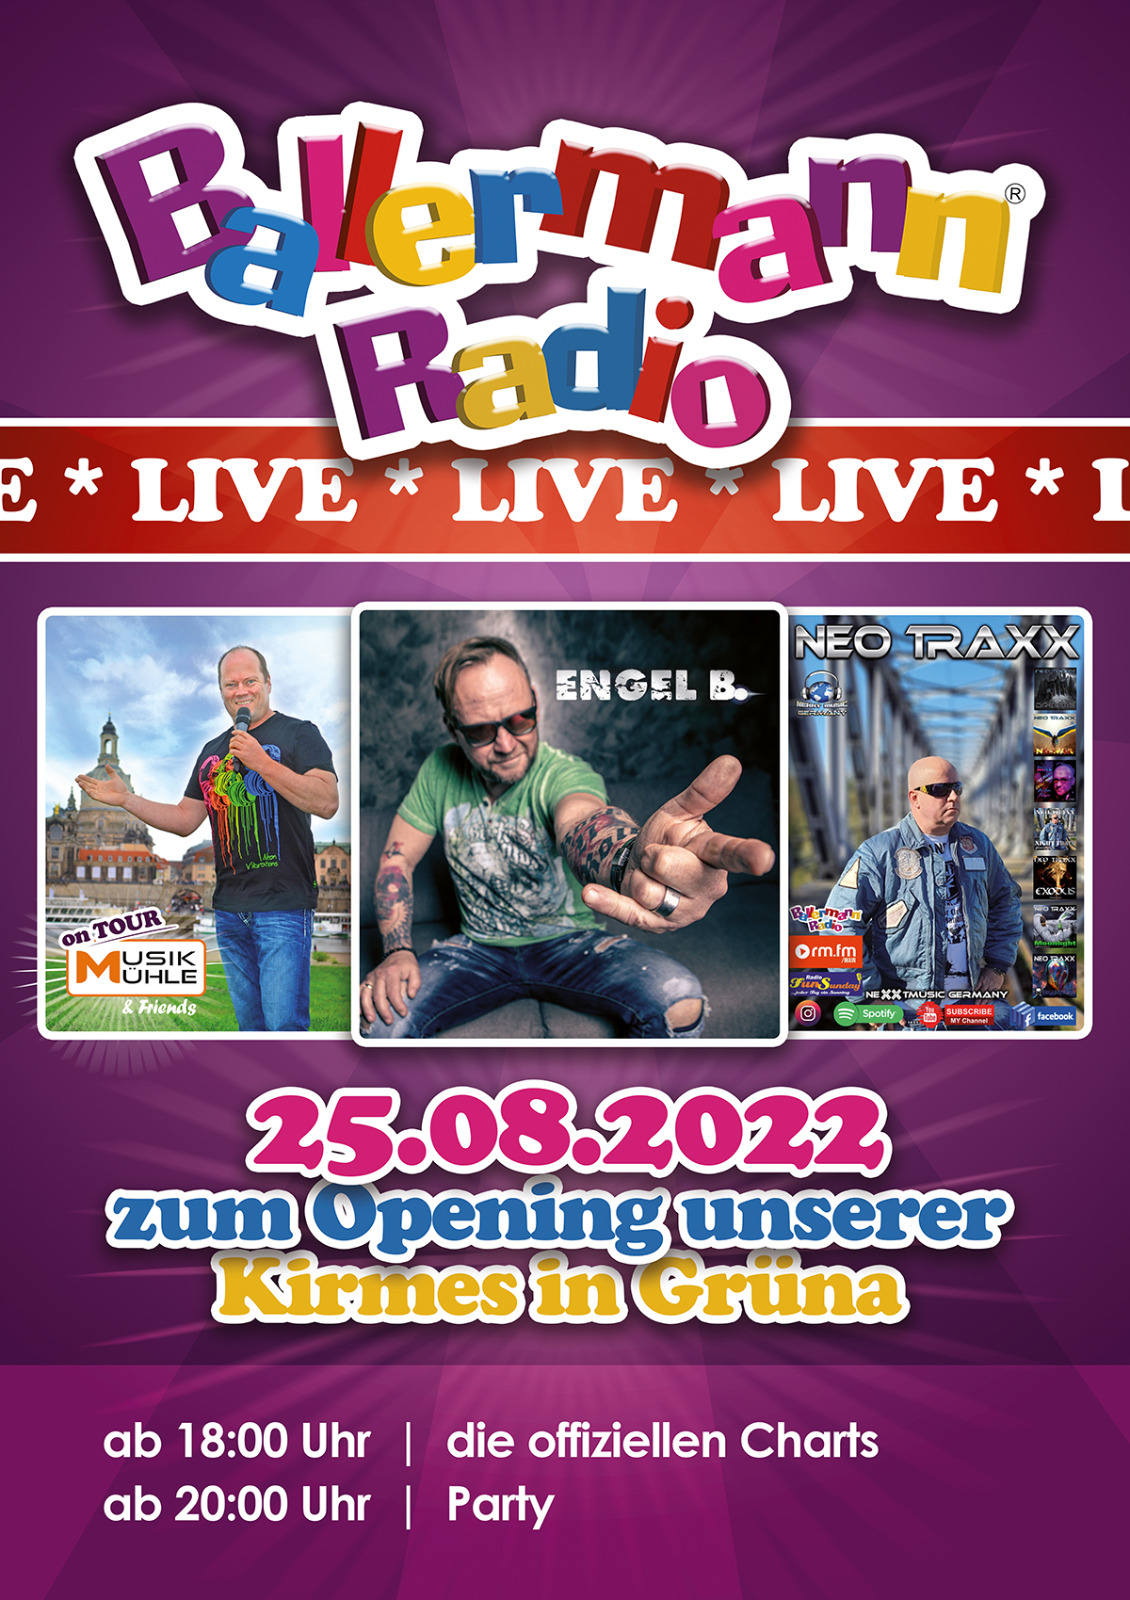 Ballermann Radio on Tour: Live-Übertragung vom Stadtfest in Grüna am 25.08.22